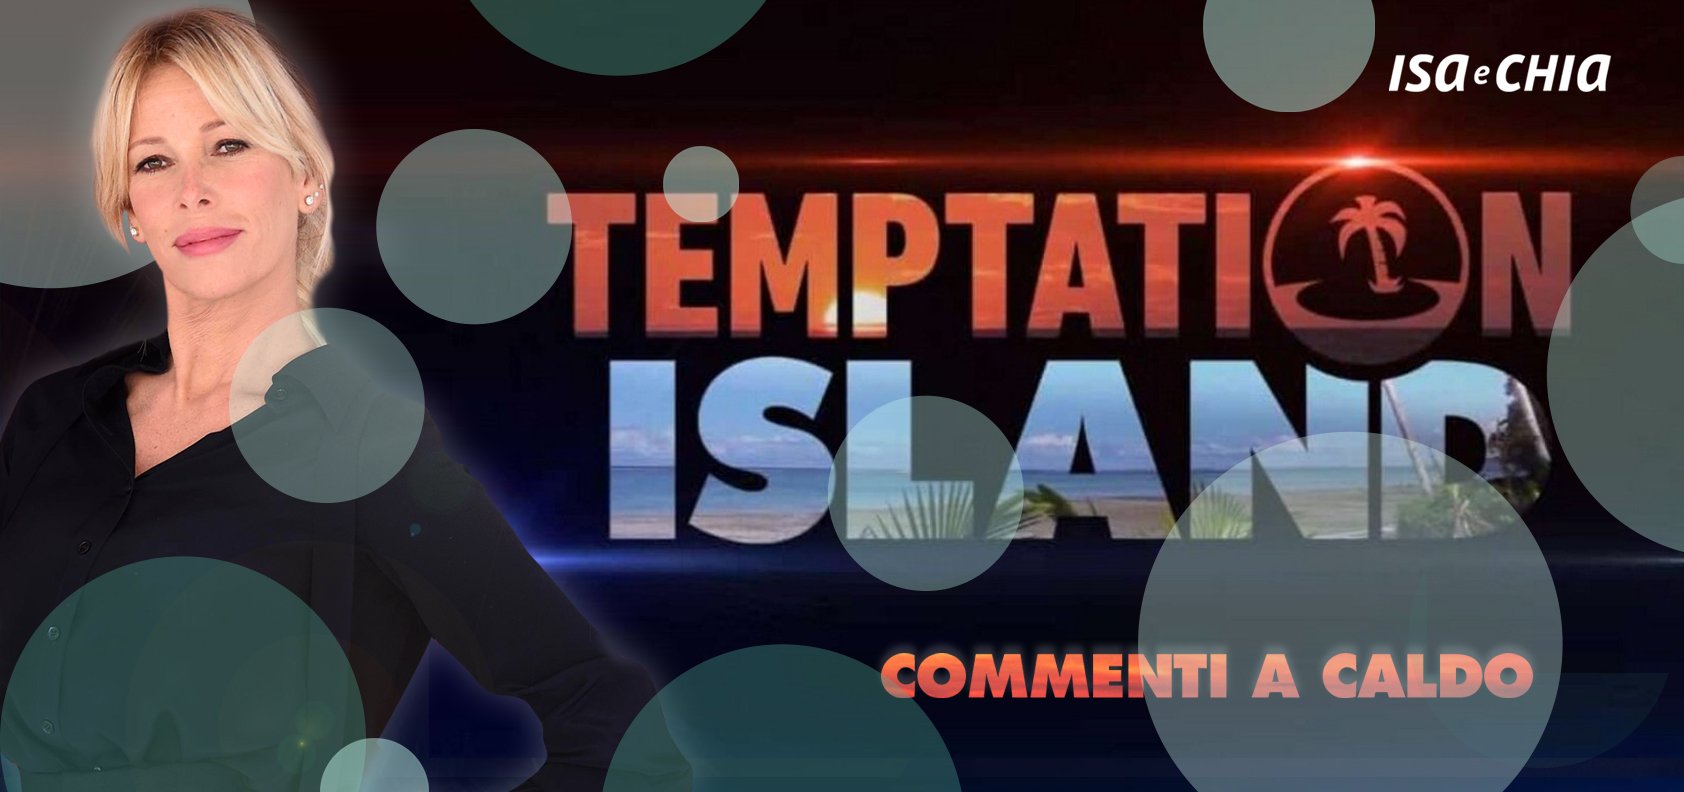 ‘Temptation Island 8’, sesta puntata: commenti a caldo